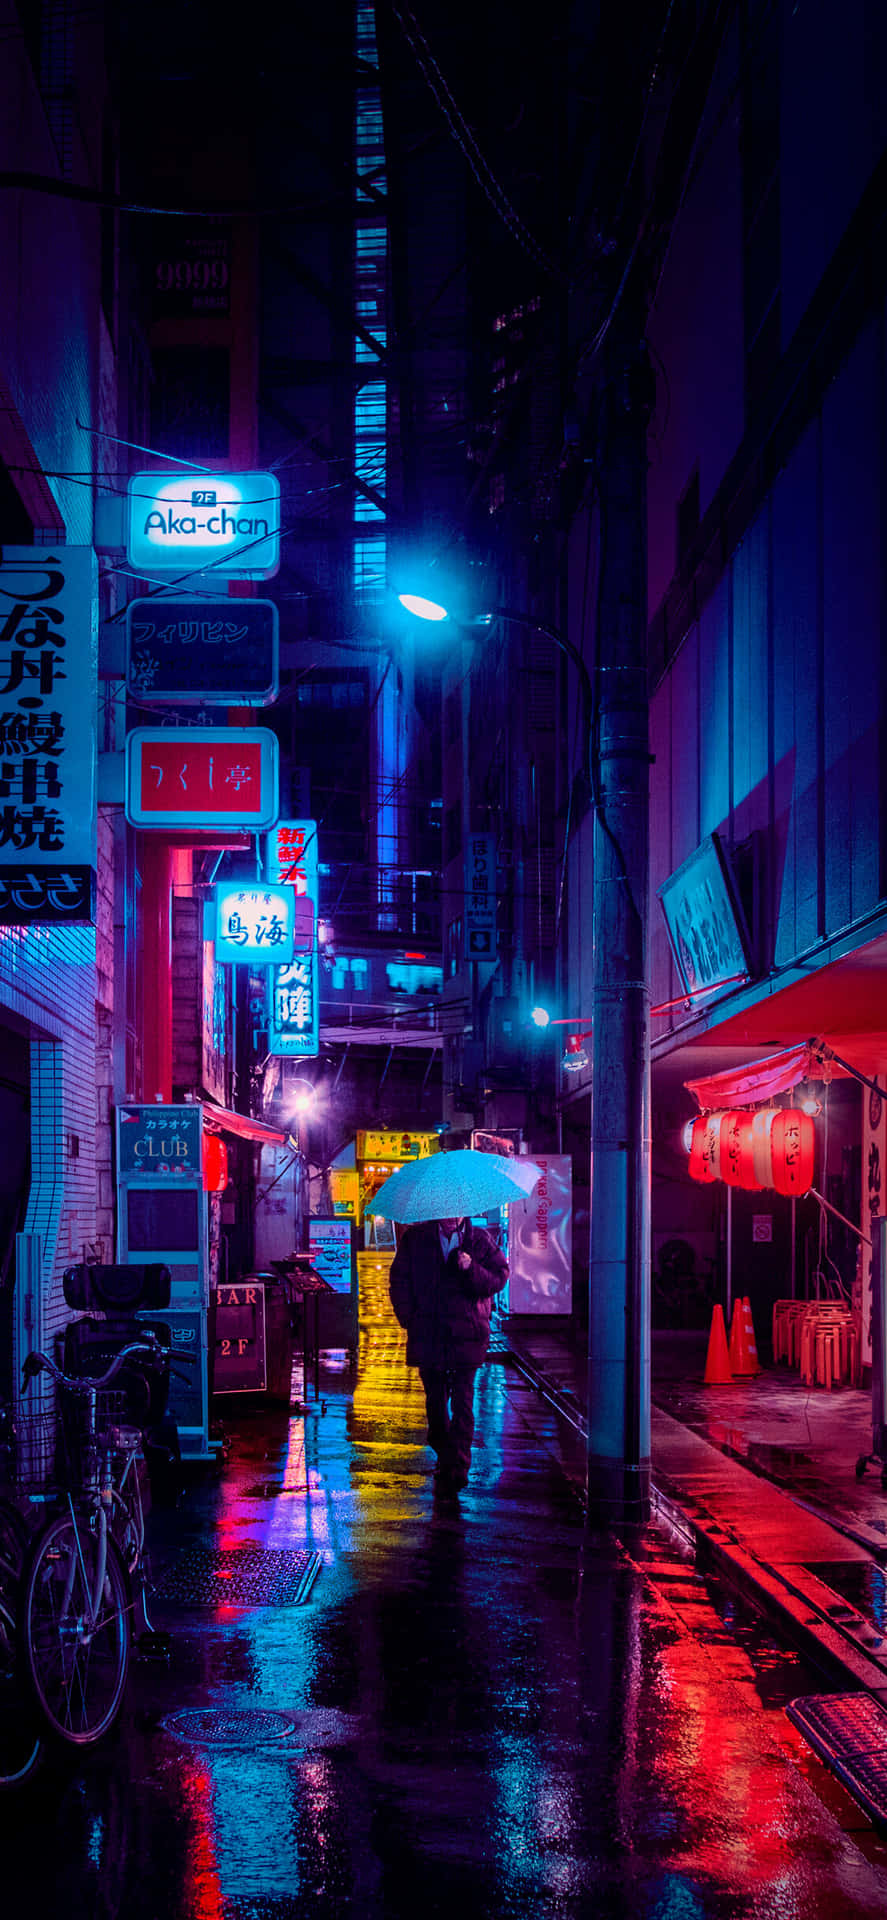 Einenasse Straße Mit Vielen Neonlichtern Wallpaper